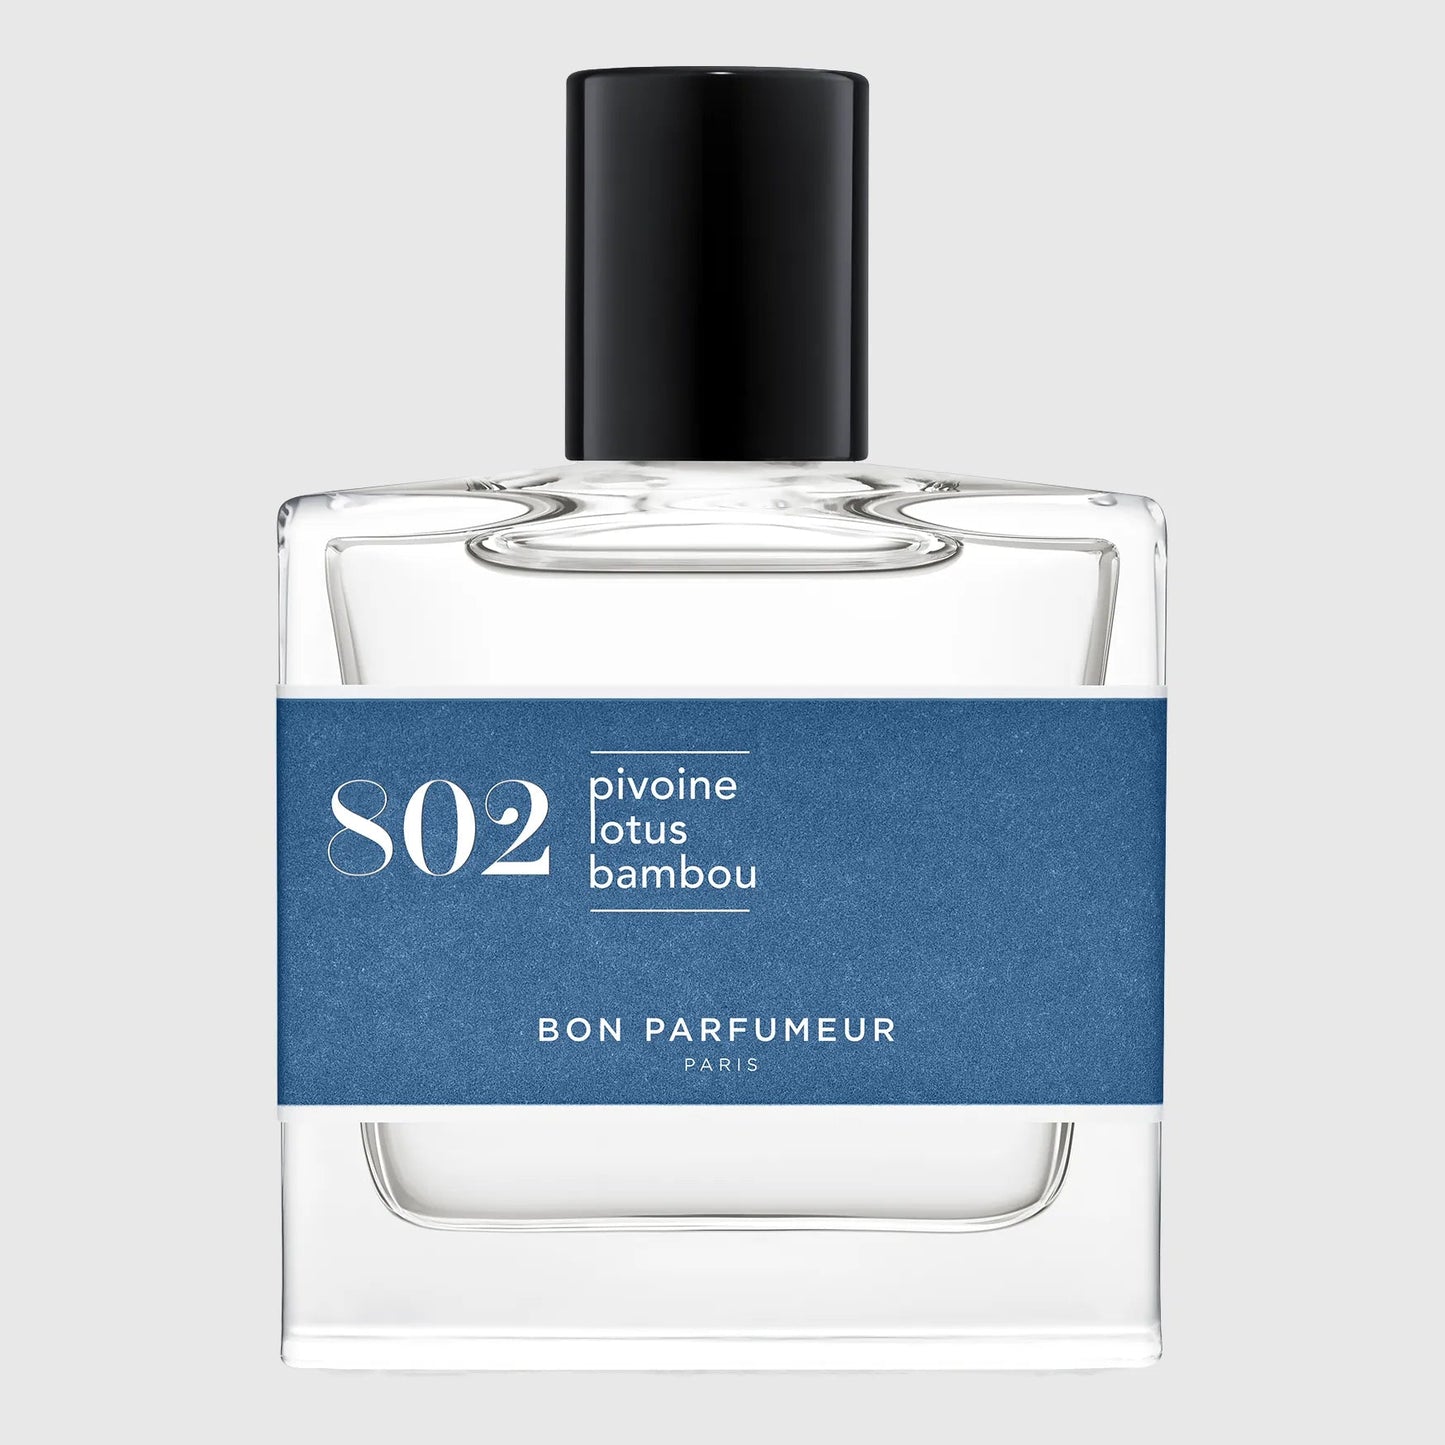 Bon Parfumeur Eau de Parfum 802 Fragrance Bon Parfumeur 